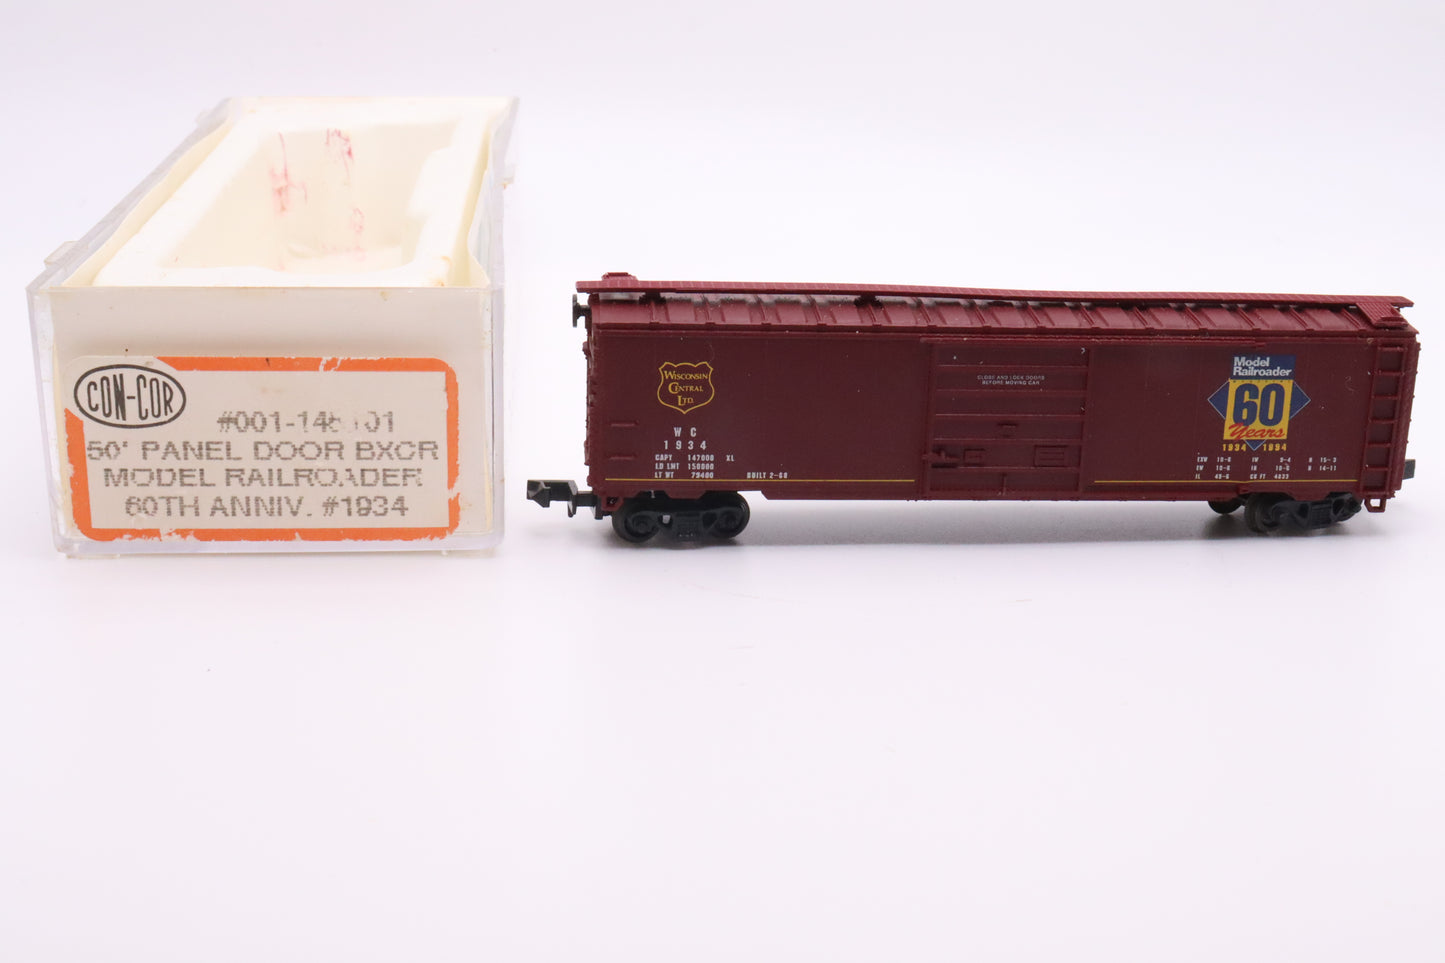 CC-001-145101 - 50' Panel Door Boxcar - Model Railroader 60th Anniversary - WC-1934